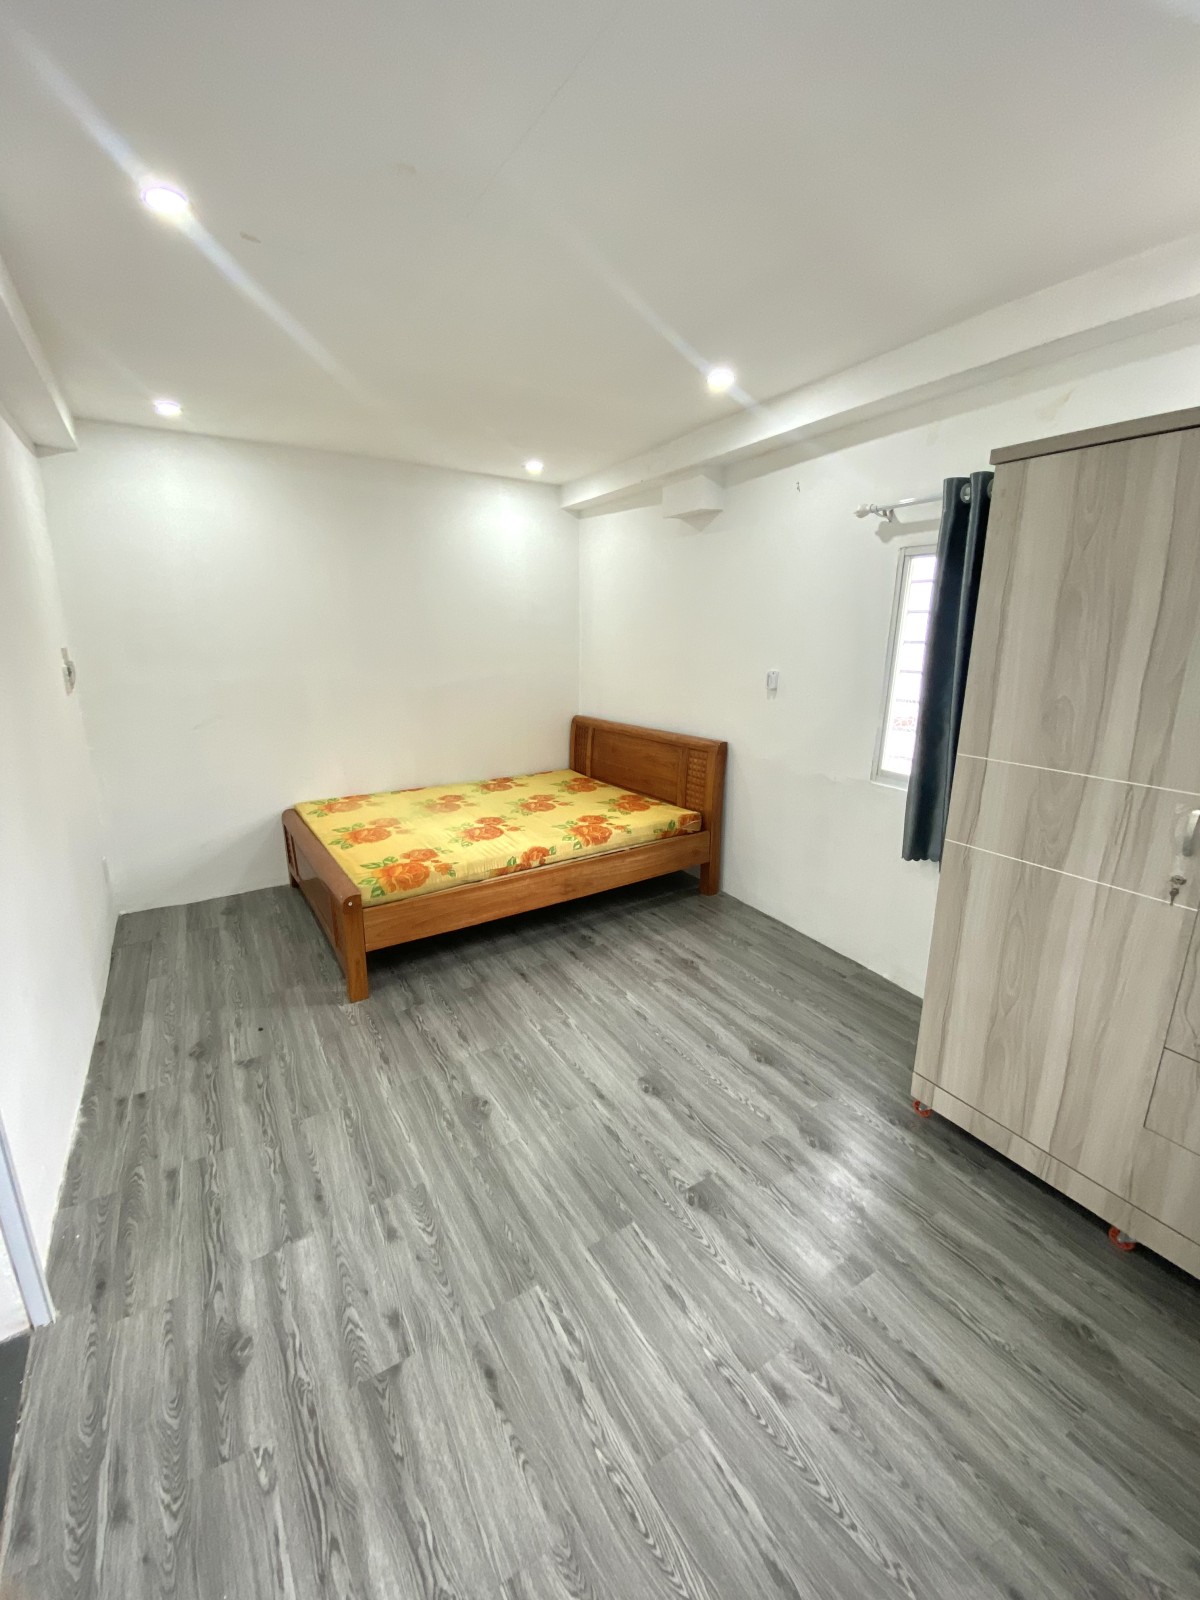 Căn hộ 1 phòng ngủ tách biệt, có bếp riêng, full nội thất, gần công viên Lê Thị Riêng